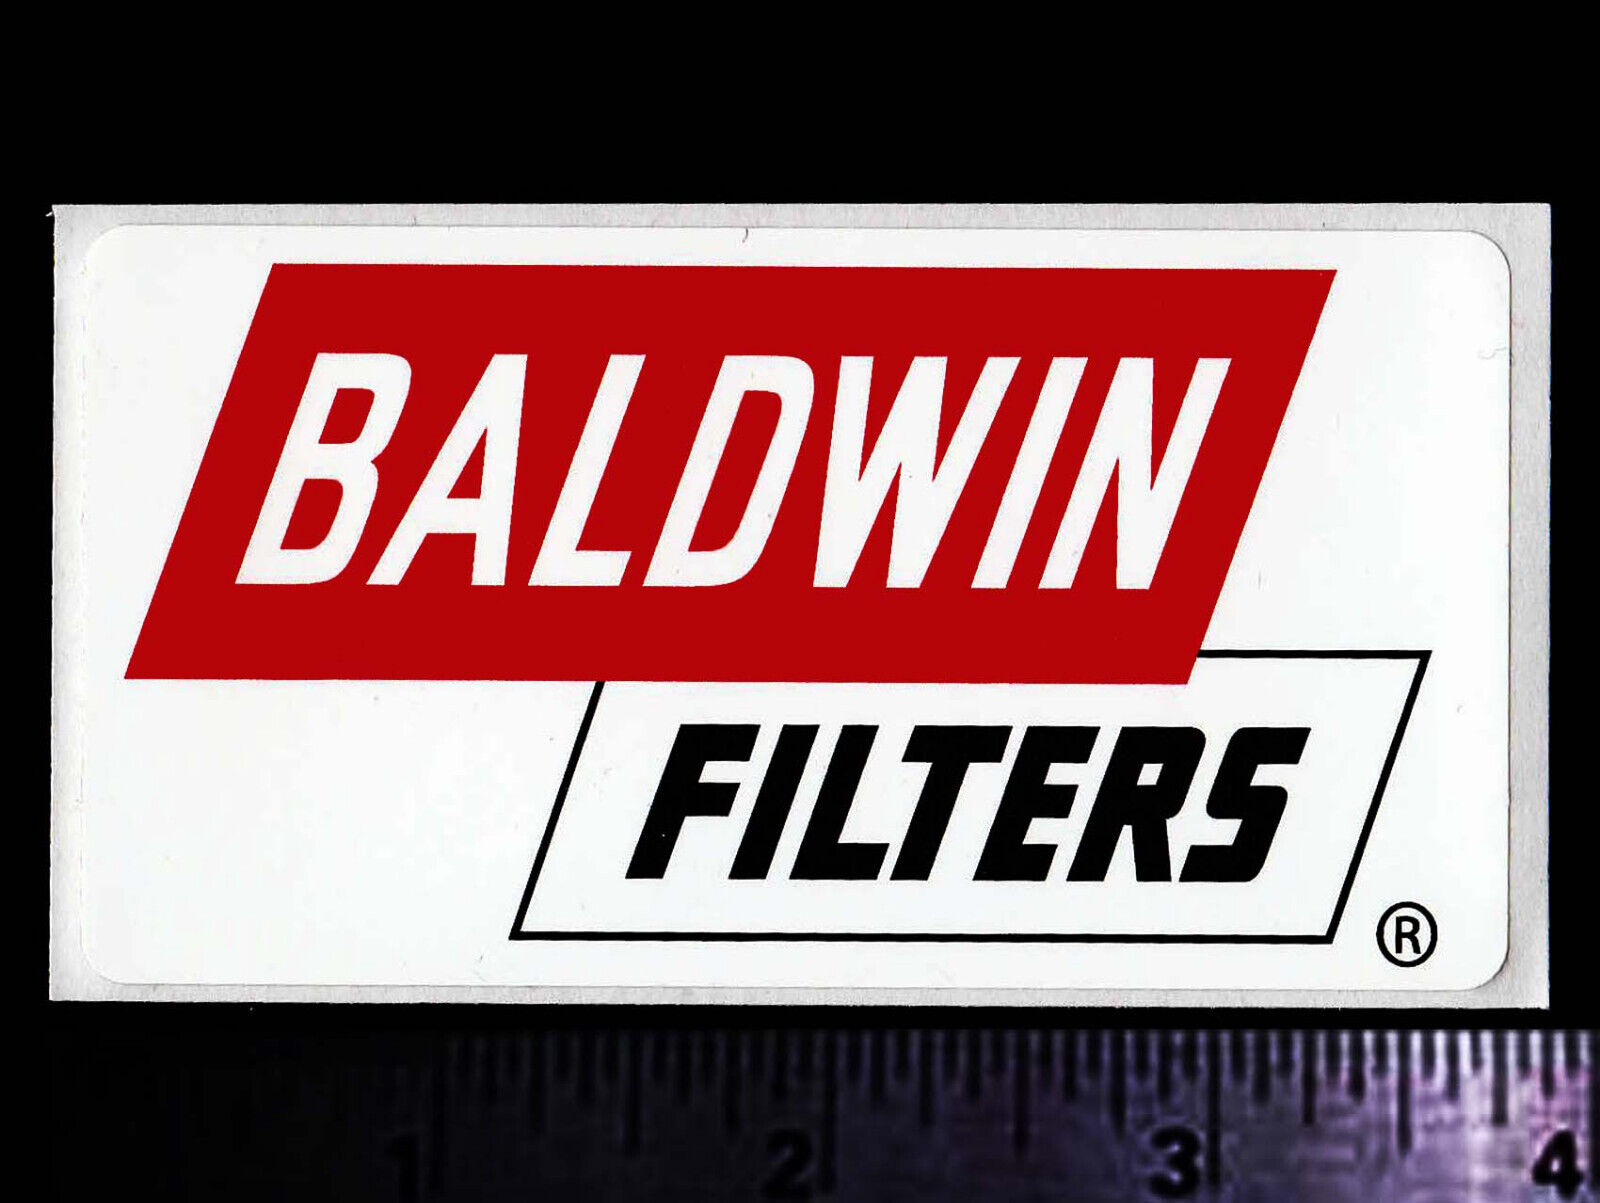 BALDWIN Filters - Original Vintage 1970’s 80’s Racing Decal/Sticker - 3.75 inch